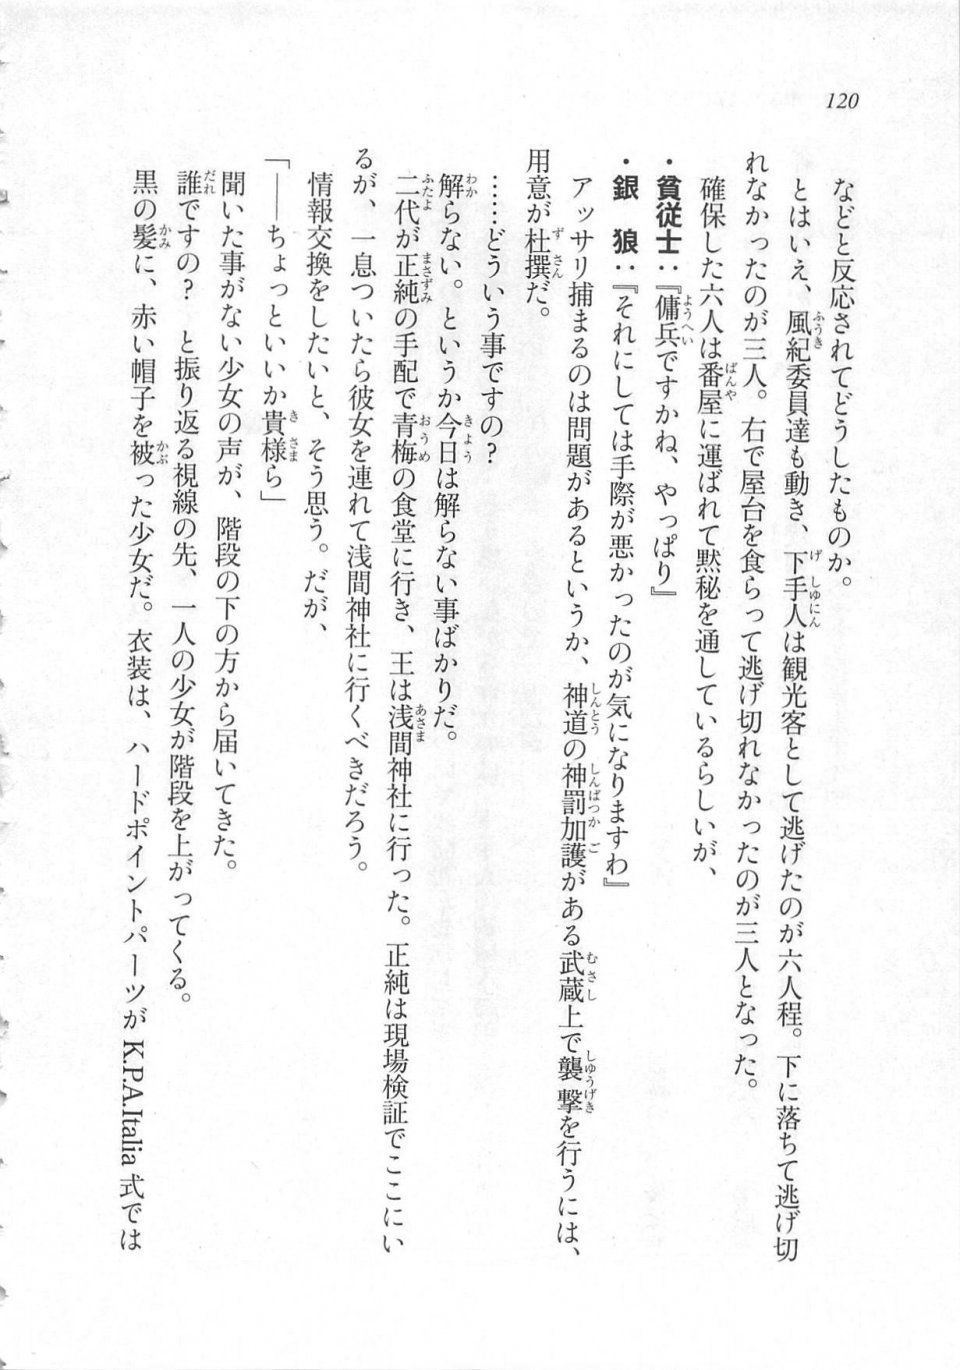 Kyoukai Senjou no Horizon LN Sidestory Vol 3 - Photo #124